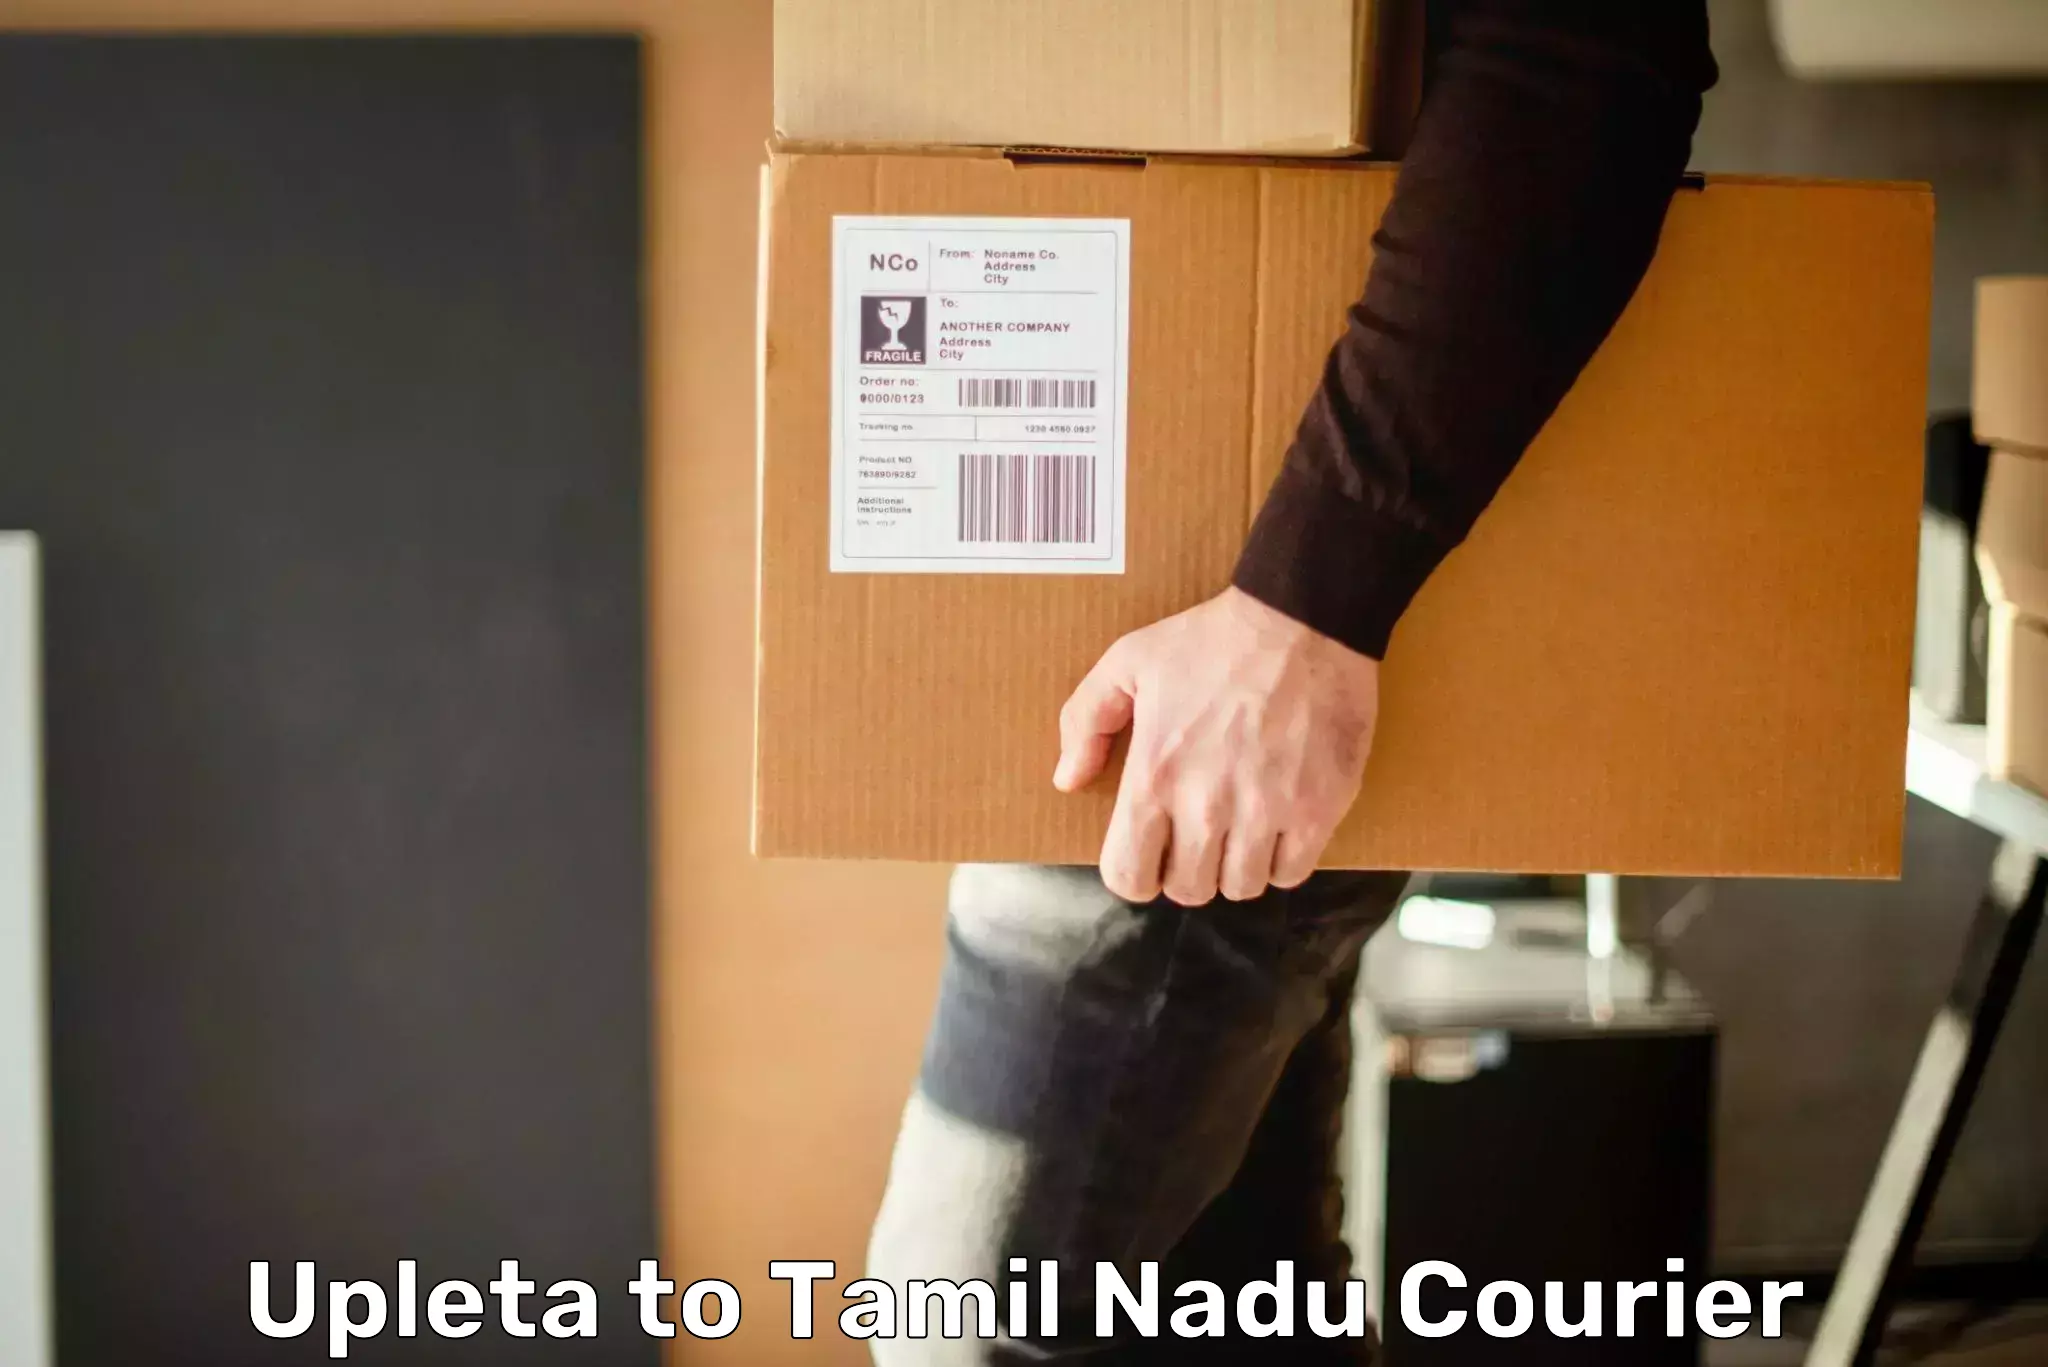 Efficient parcel delivery Upleta to Tamil Nadu